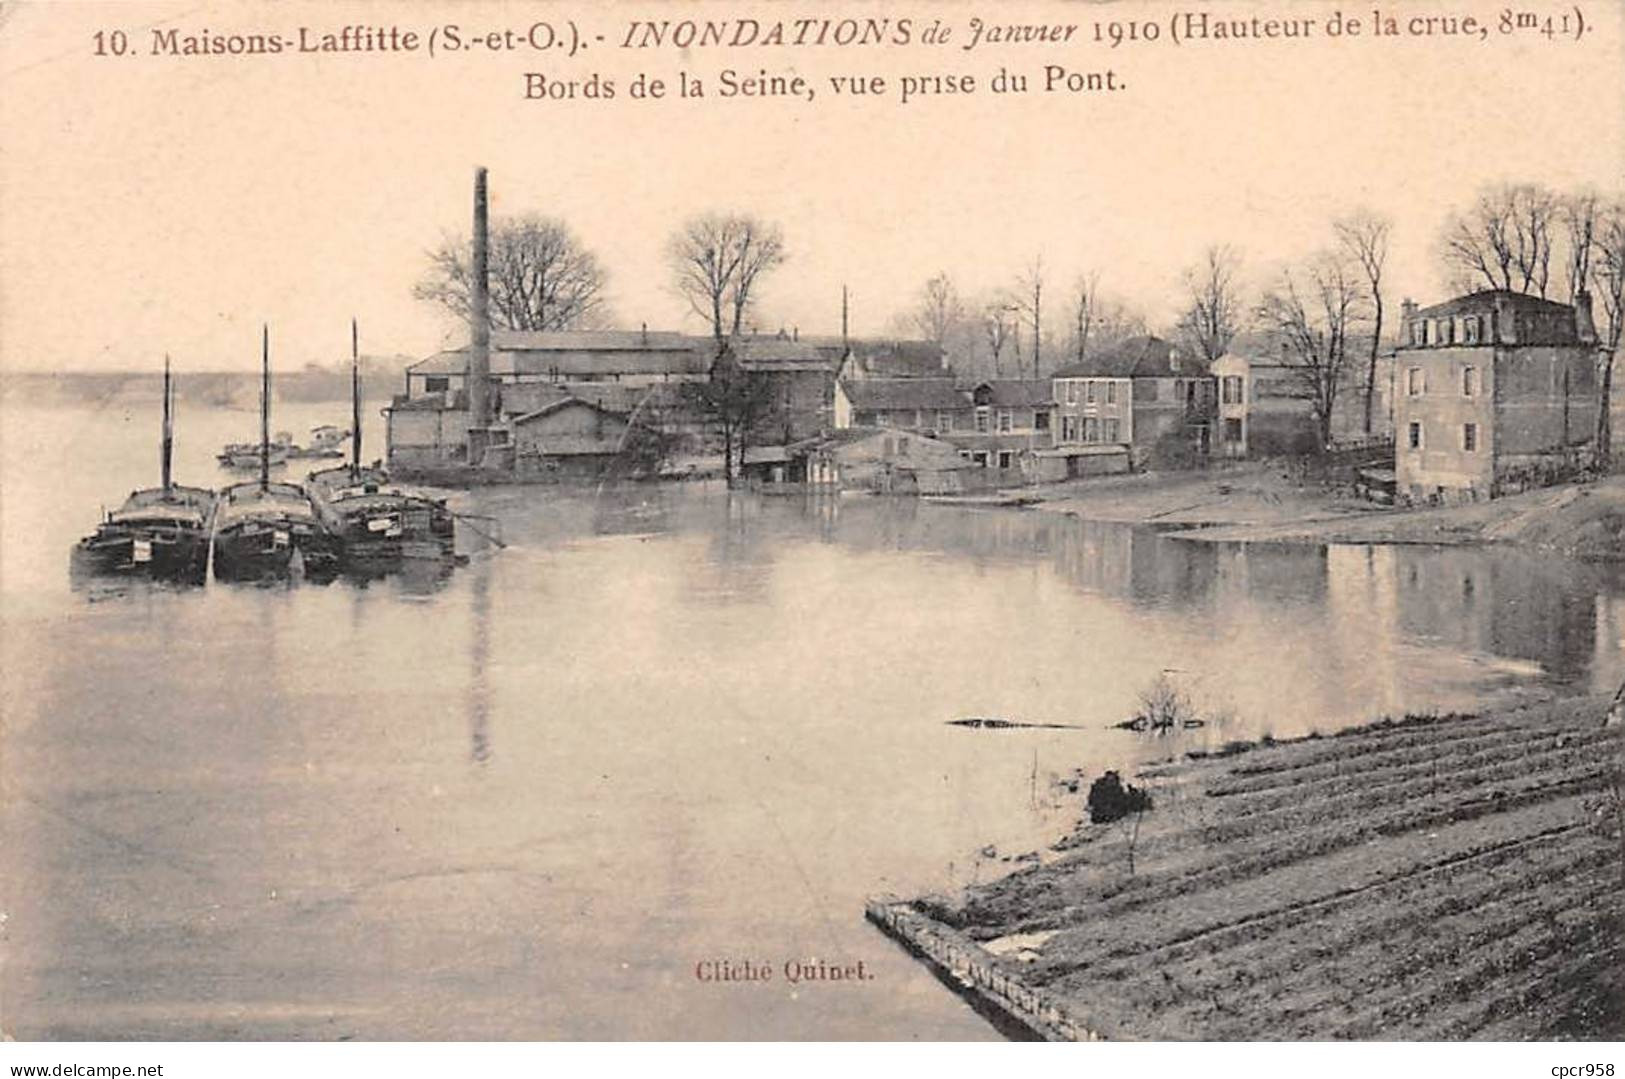 78 - MAISONS LAFFITTE - SAN23838 - Inondations De Janvier 1910 - Bords De Seine - Vue Prise Du Pont - Maisons-Laffitte